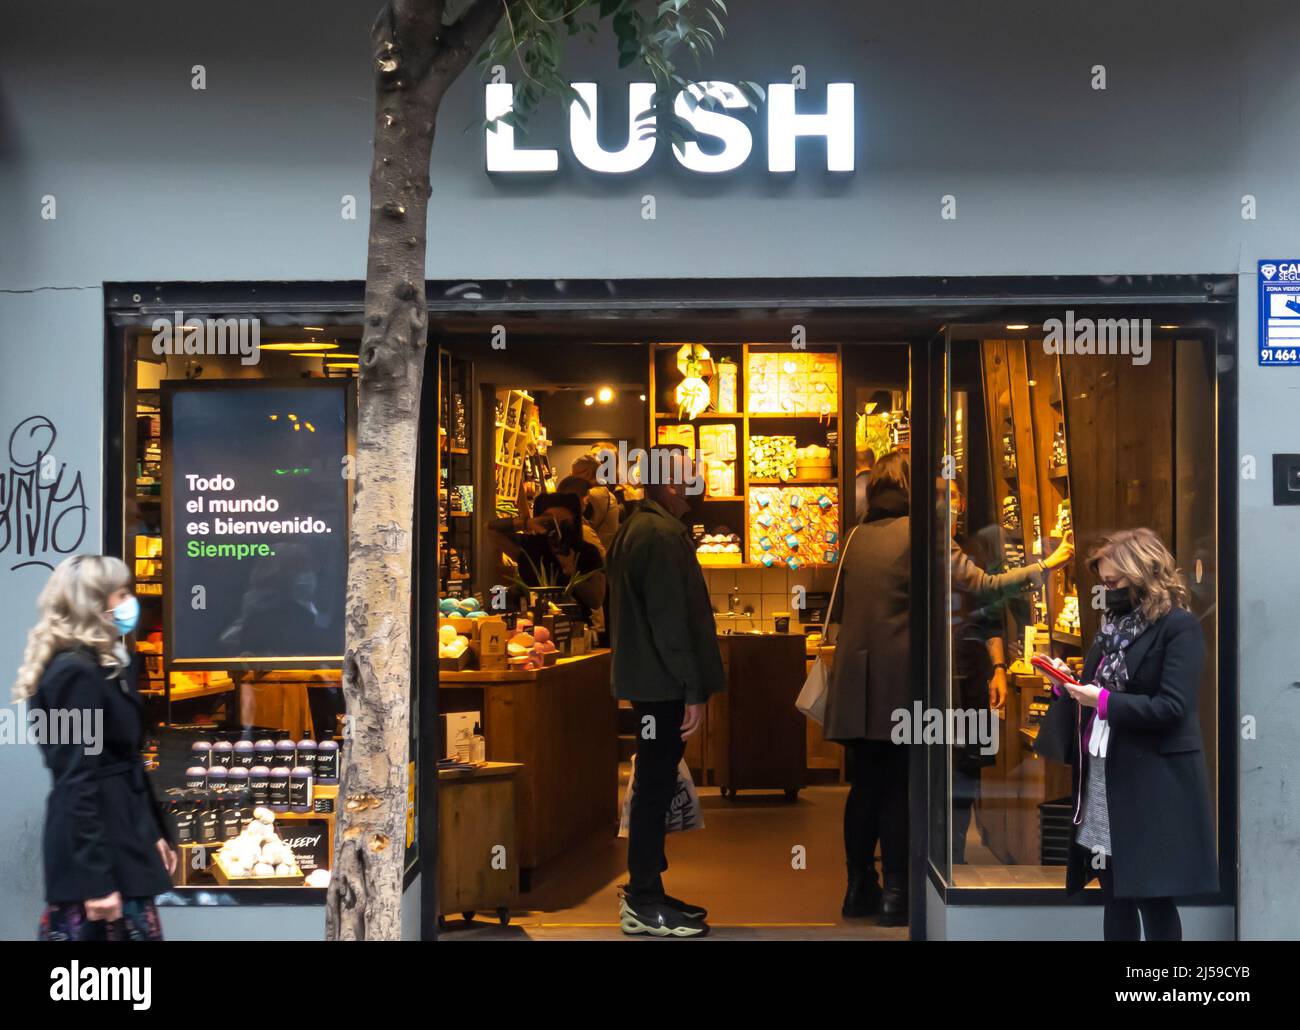 Lush Cosmetics, magasin de cosmétiques dans la Calle de Fuencarral, 64, Malasana, Madrid, Espagne Banque D'Images